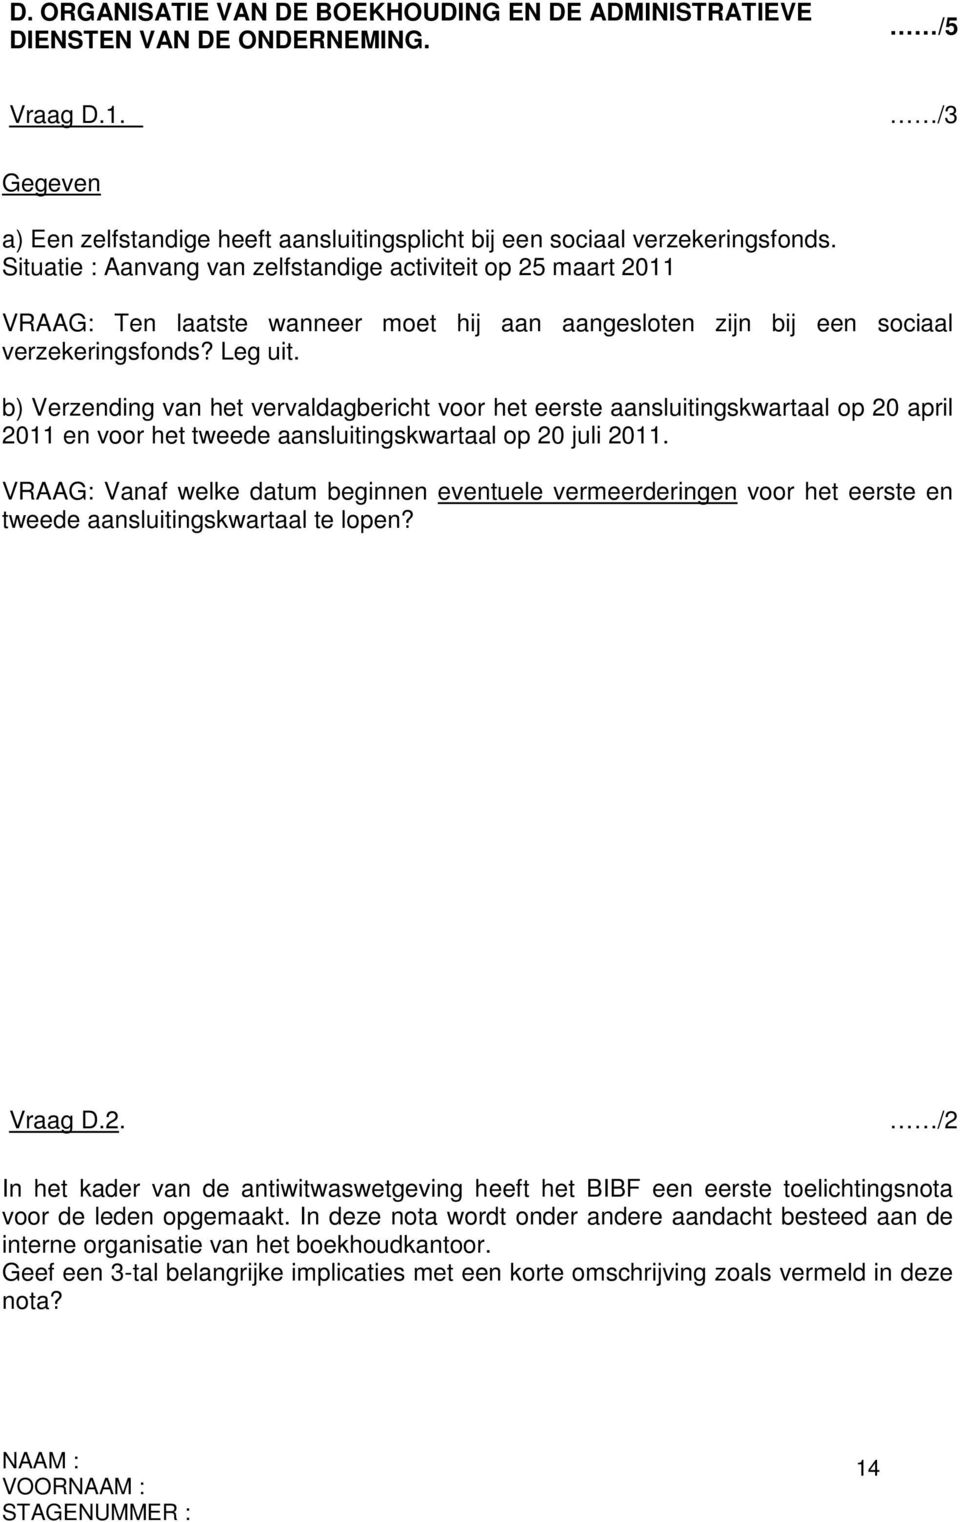 b) Verzending van het vervaldagbericht voor het eerste aansluitingskwartaal op 20 april 2011 en voor het tweede aansluitingskwartaal op 20 juli 2011.